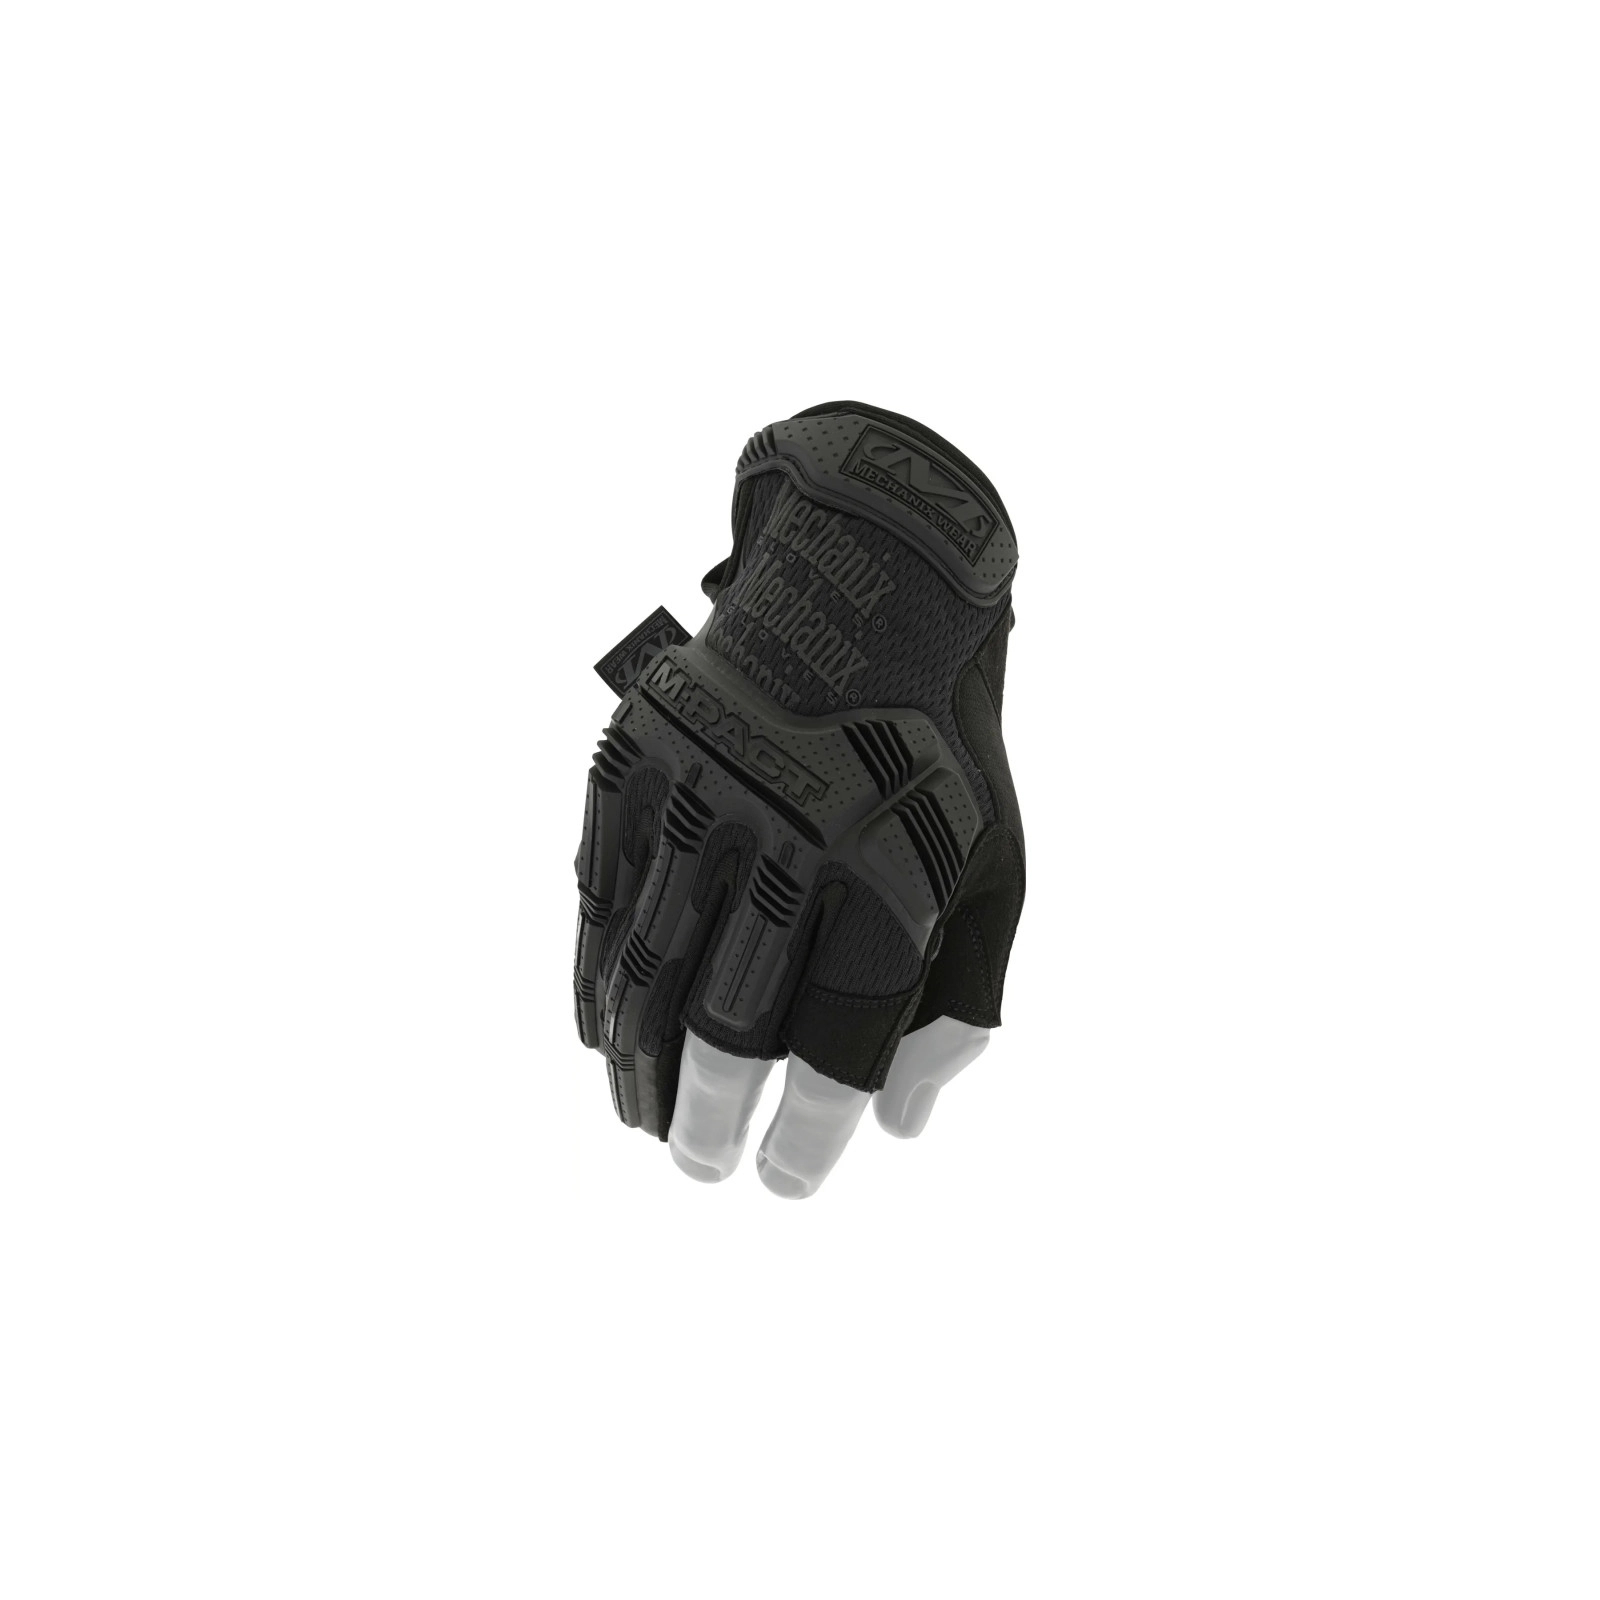 Защитные перчатки Mechanix M-Pact Trigger Finger Covert (XL) (MPF-55-011)